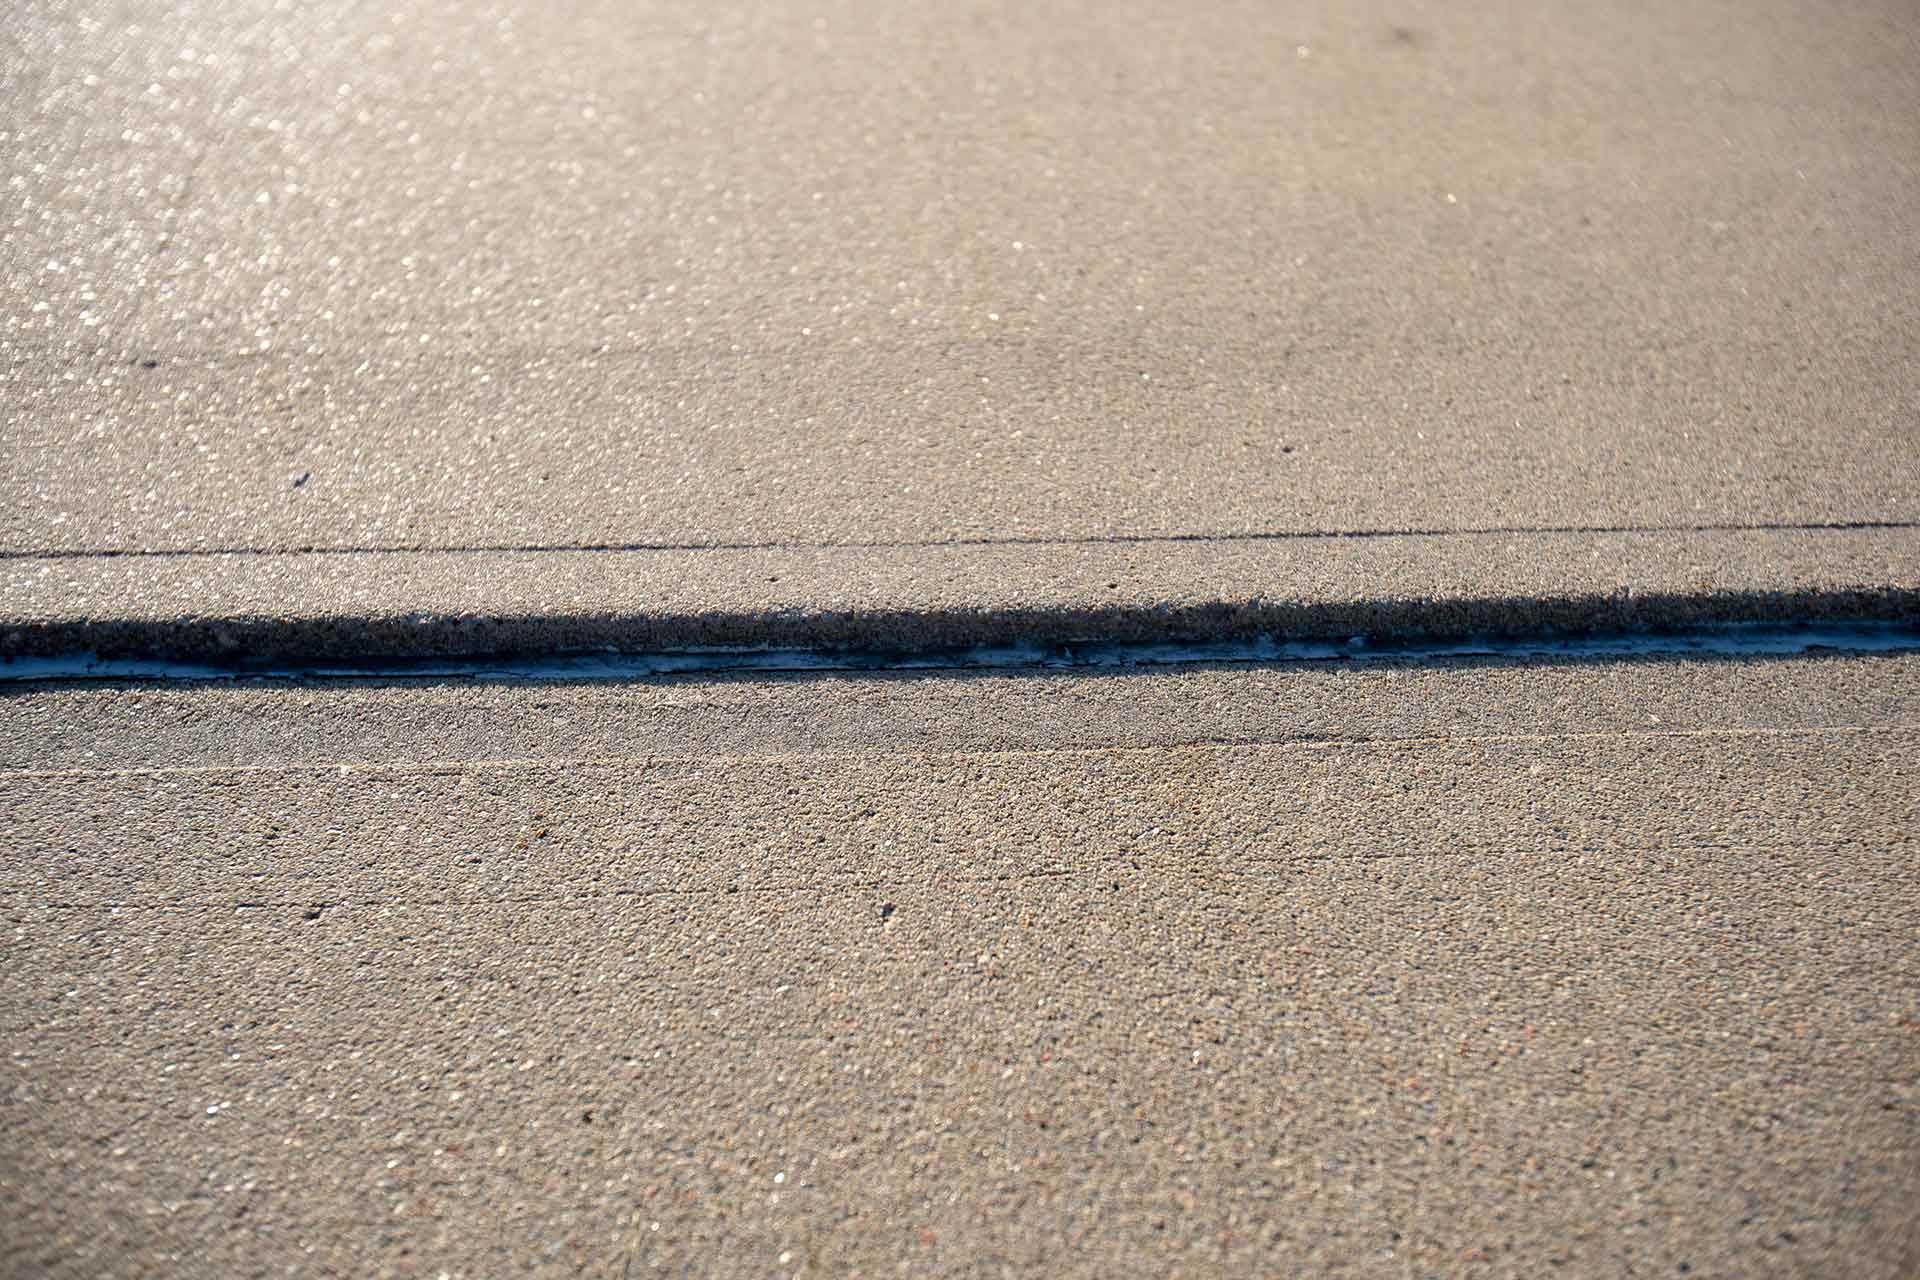 uneven driveway concrete